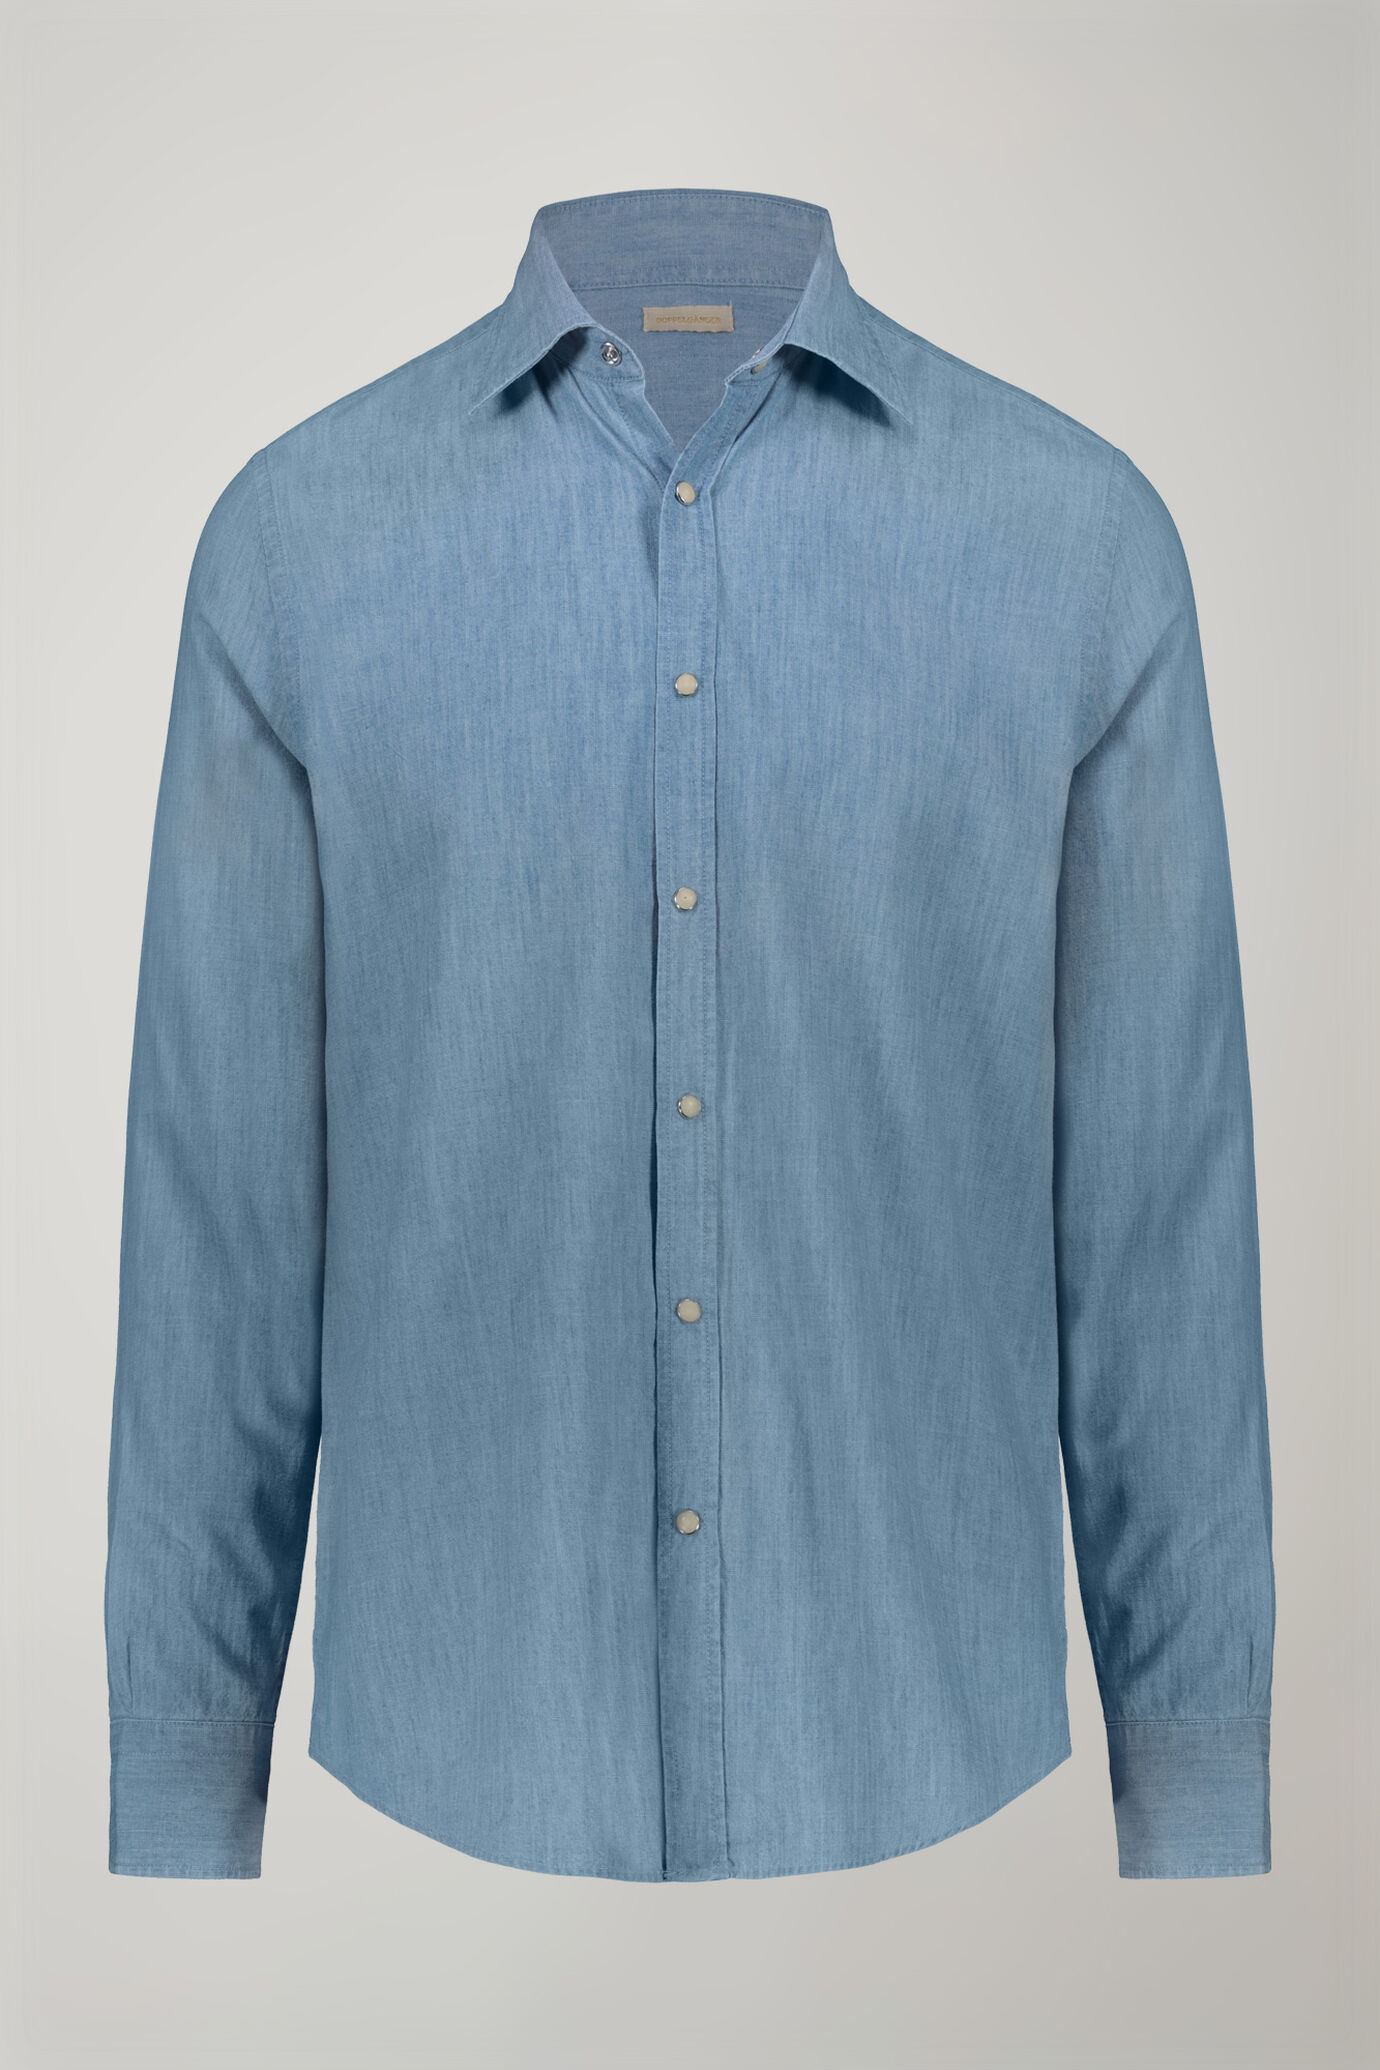 Herren-Freizeithemd mit klassischem Kragen aus 100 % Baumwolle in hellem Chambray-Stoff in bequemer Passform image number 5